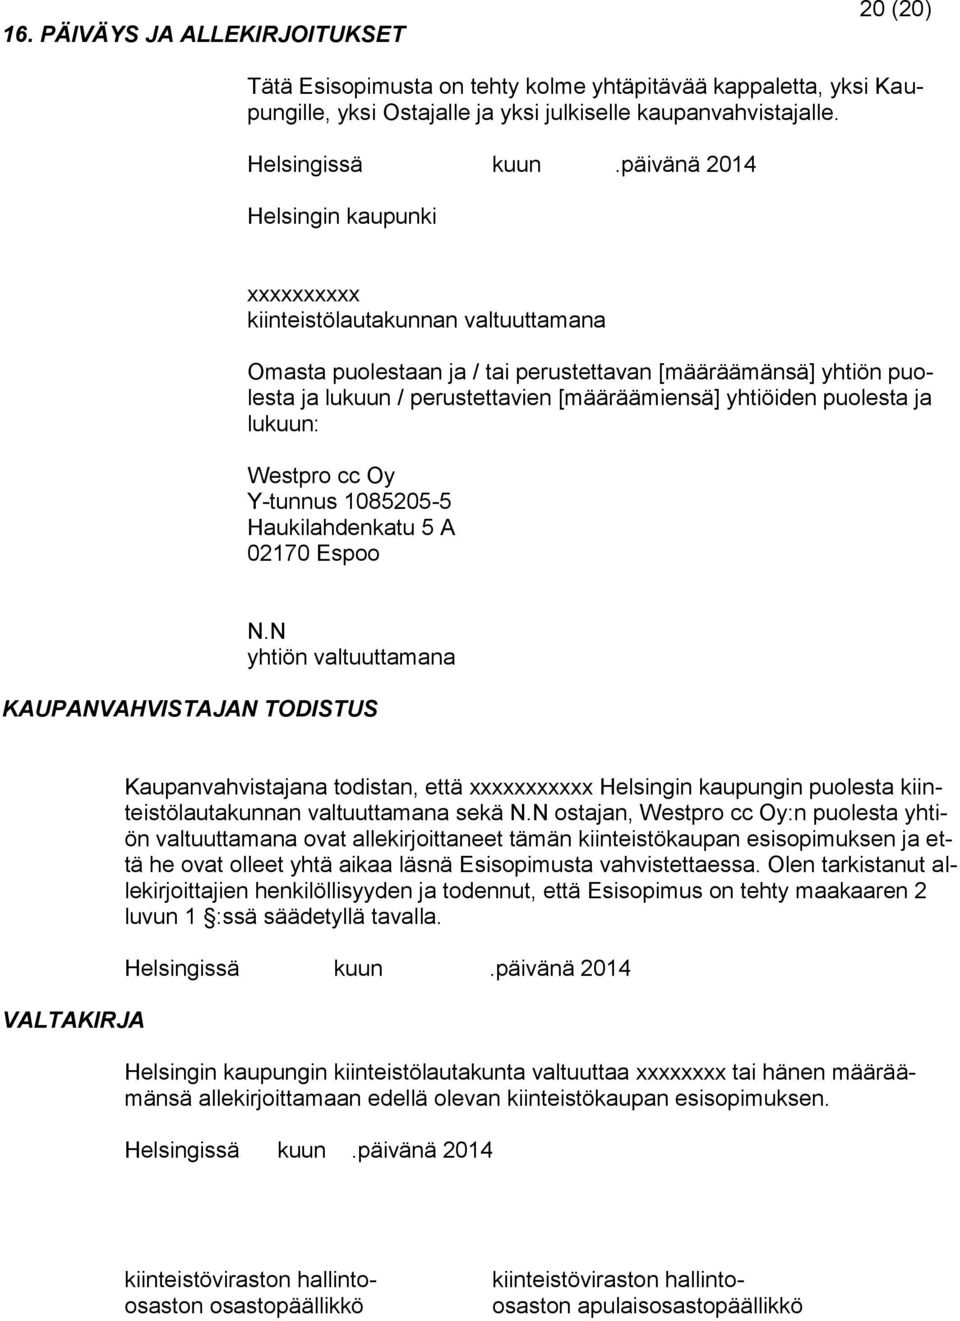 yhtiöiden puolesta ja lukuun: Westpro cc Oy Y-tunnus 1085205-5 Haukilahdenkatu 5 A 02170 Espoo N.